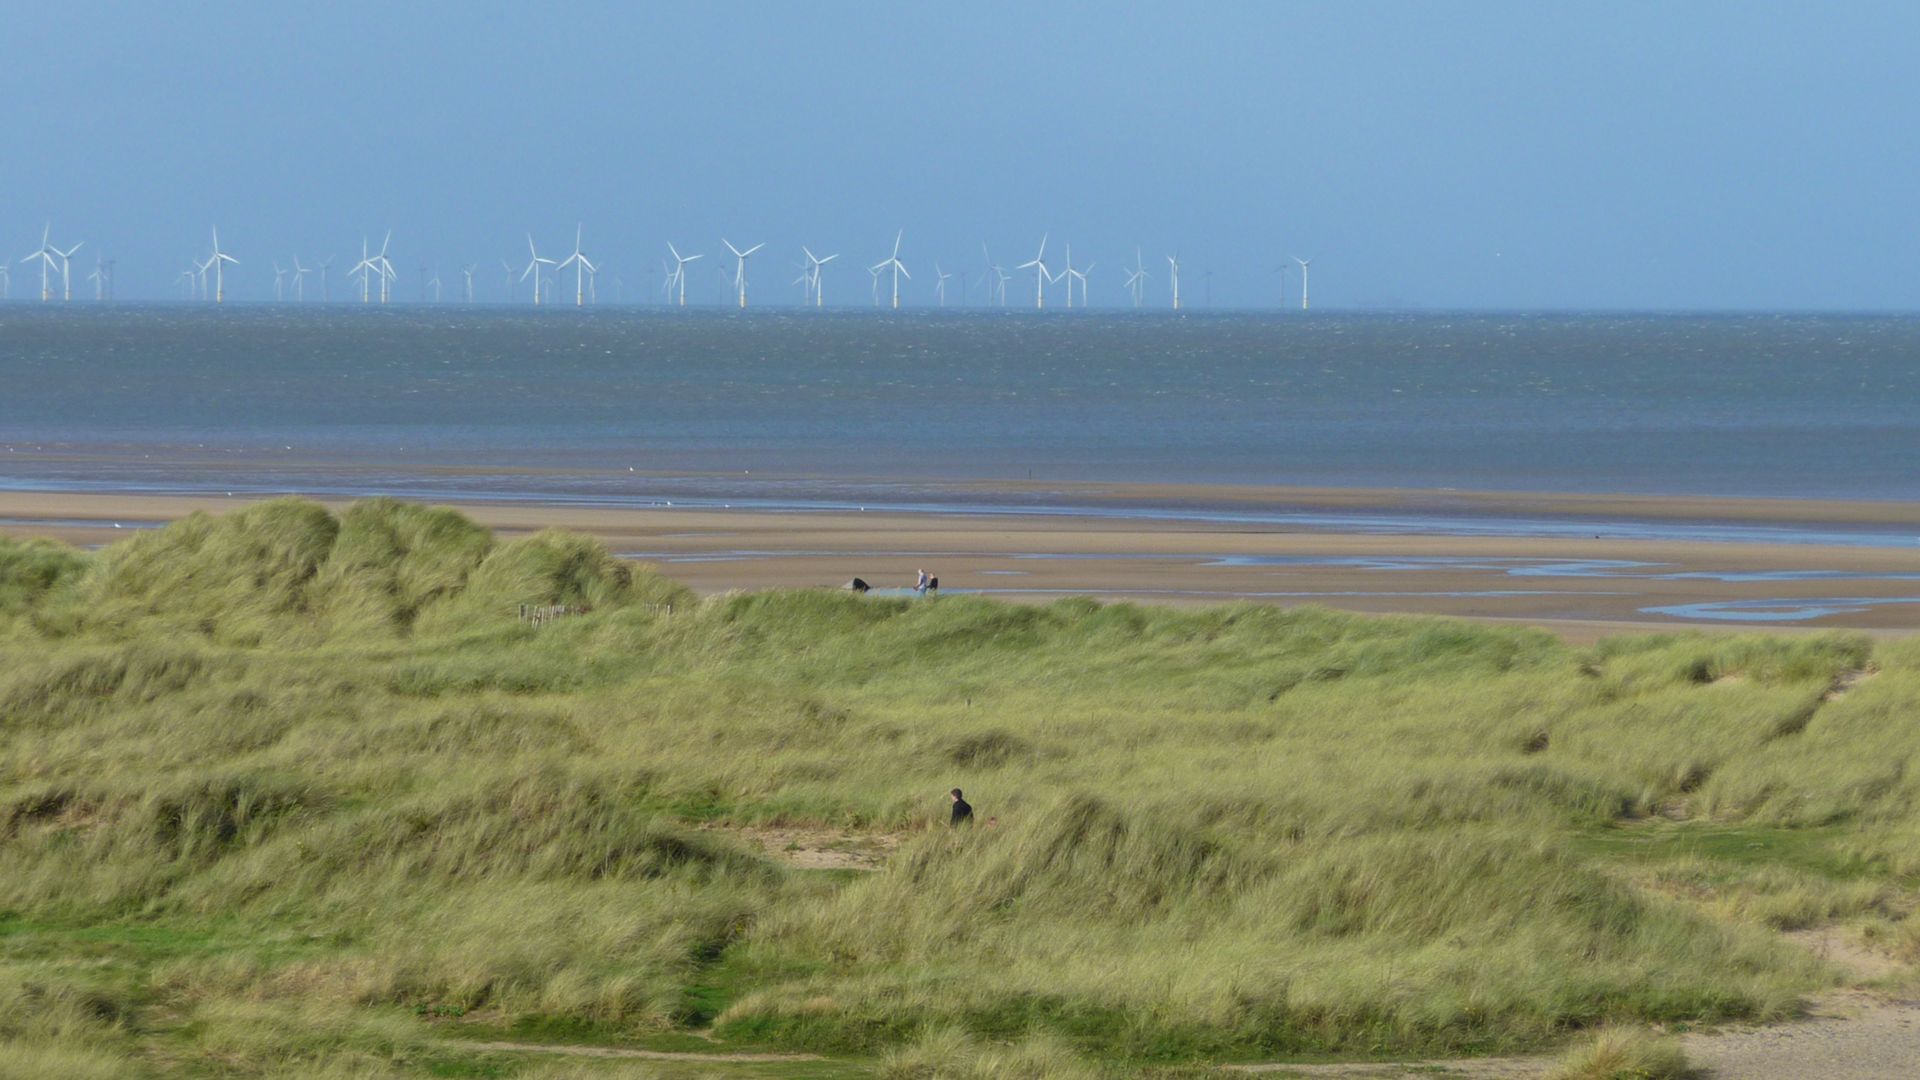 Paesaggio di spiaggia inglese con pale eoliche